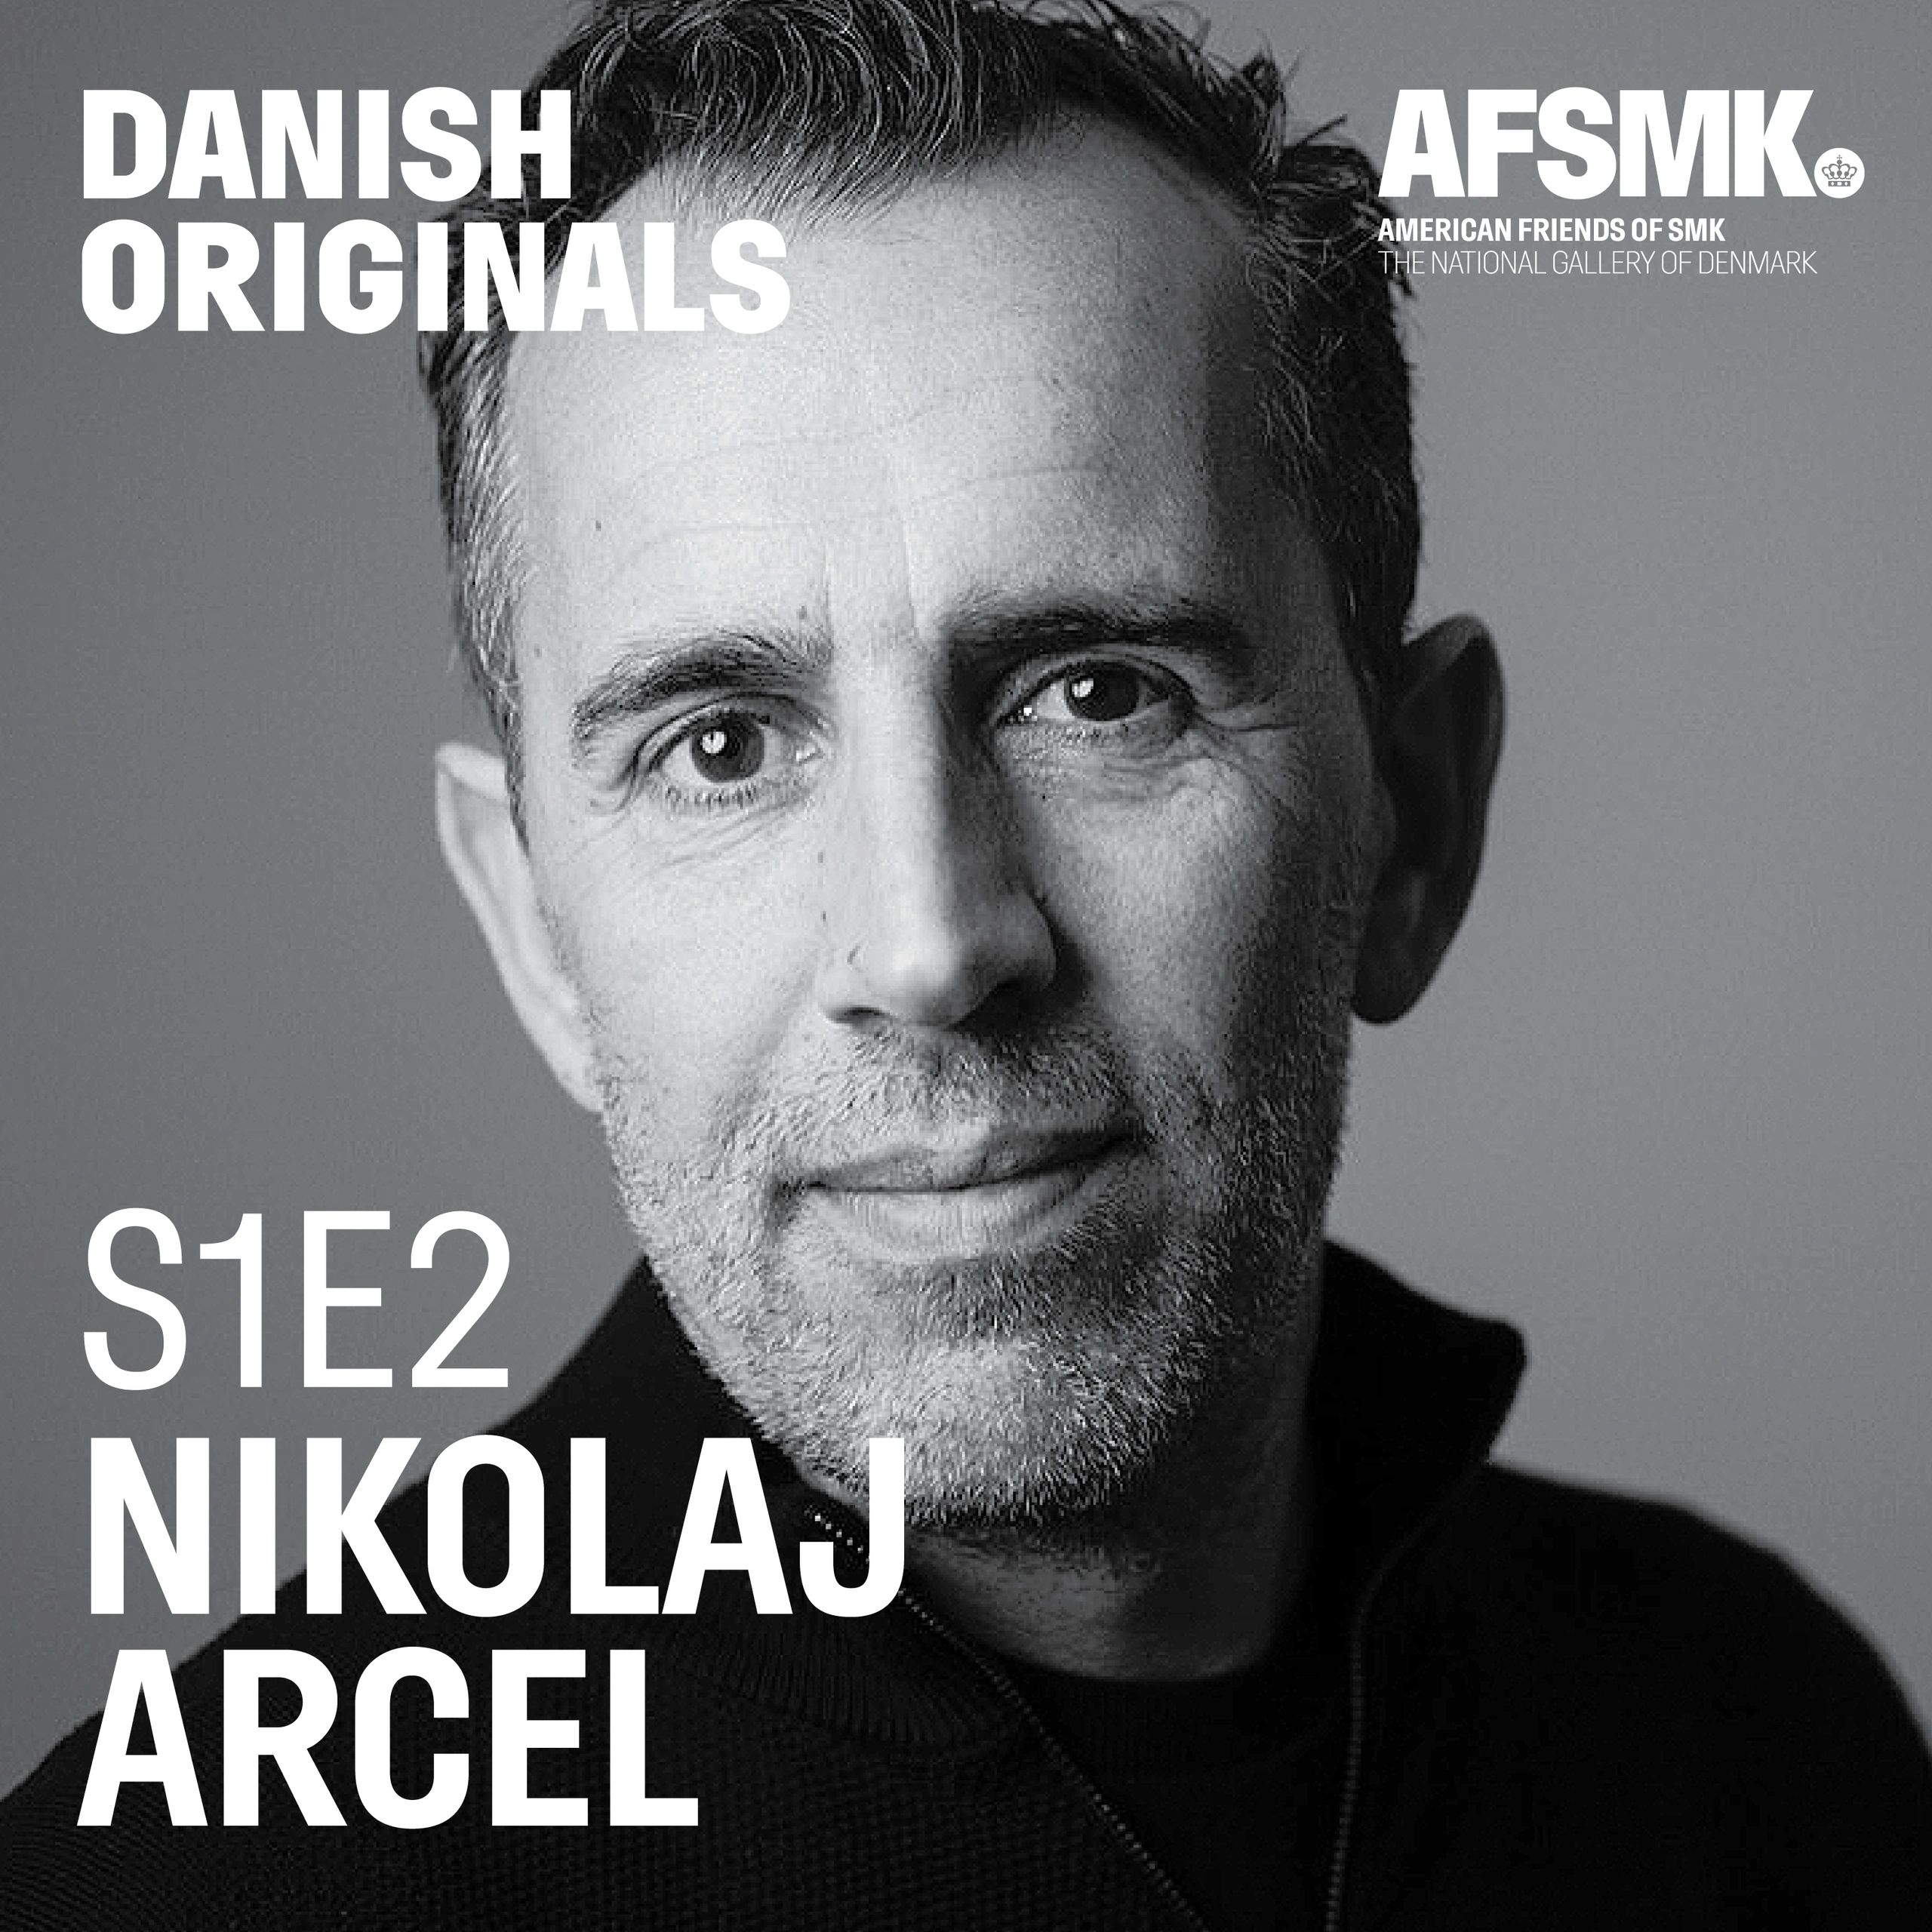 Nikolaj Arcel. (Photographer: Ola Kjelbye)